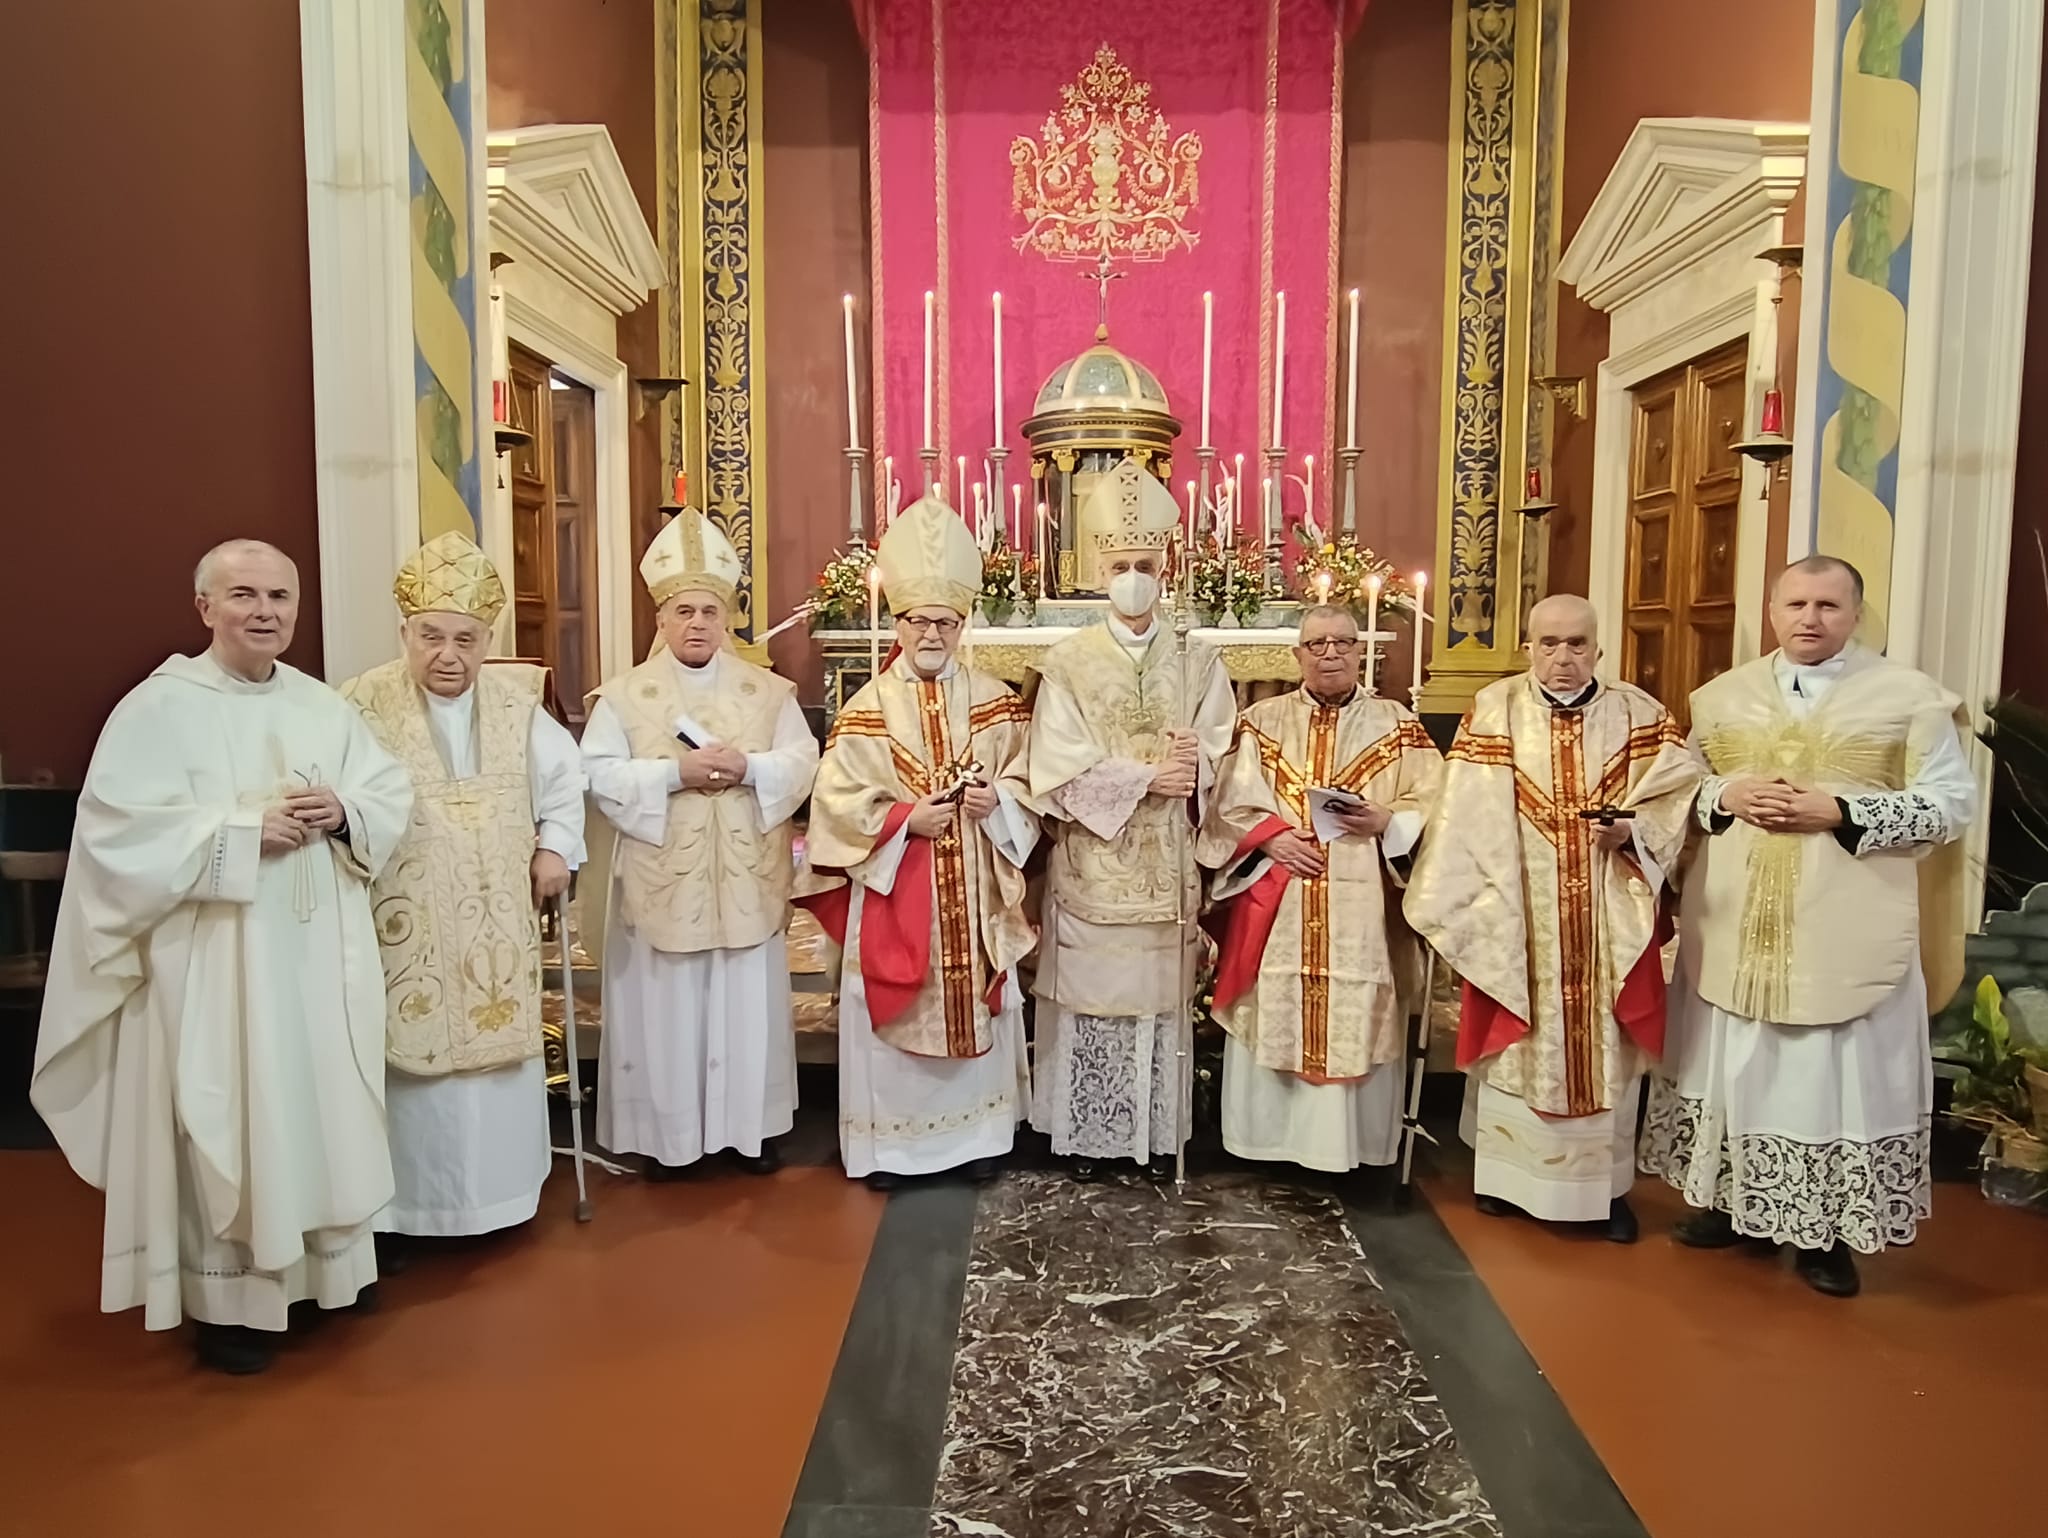 Diocesi di Acireale: giornata del clero in seminario, scambio auguri natalizi e sacerdotali con Mons. Raspanti